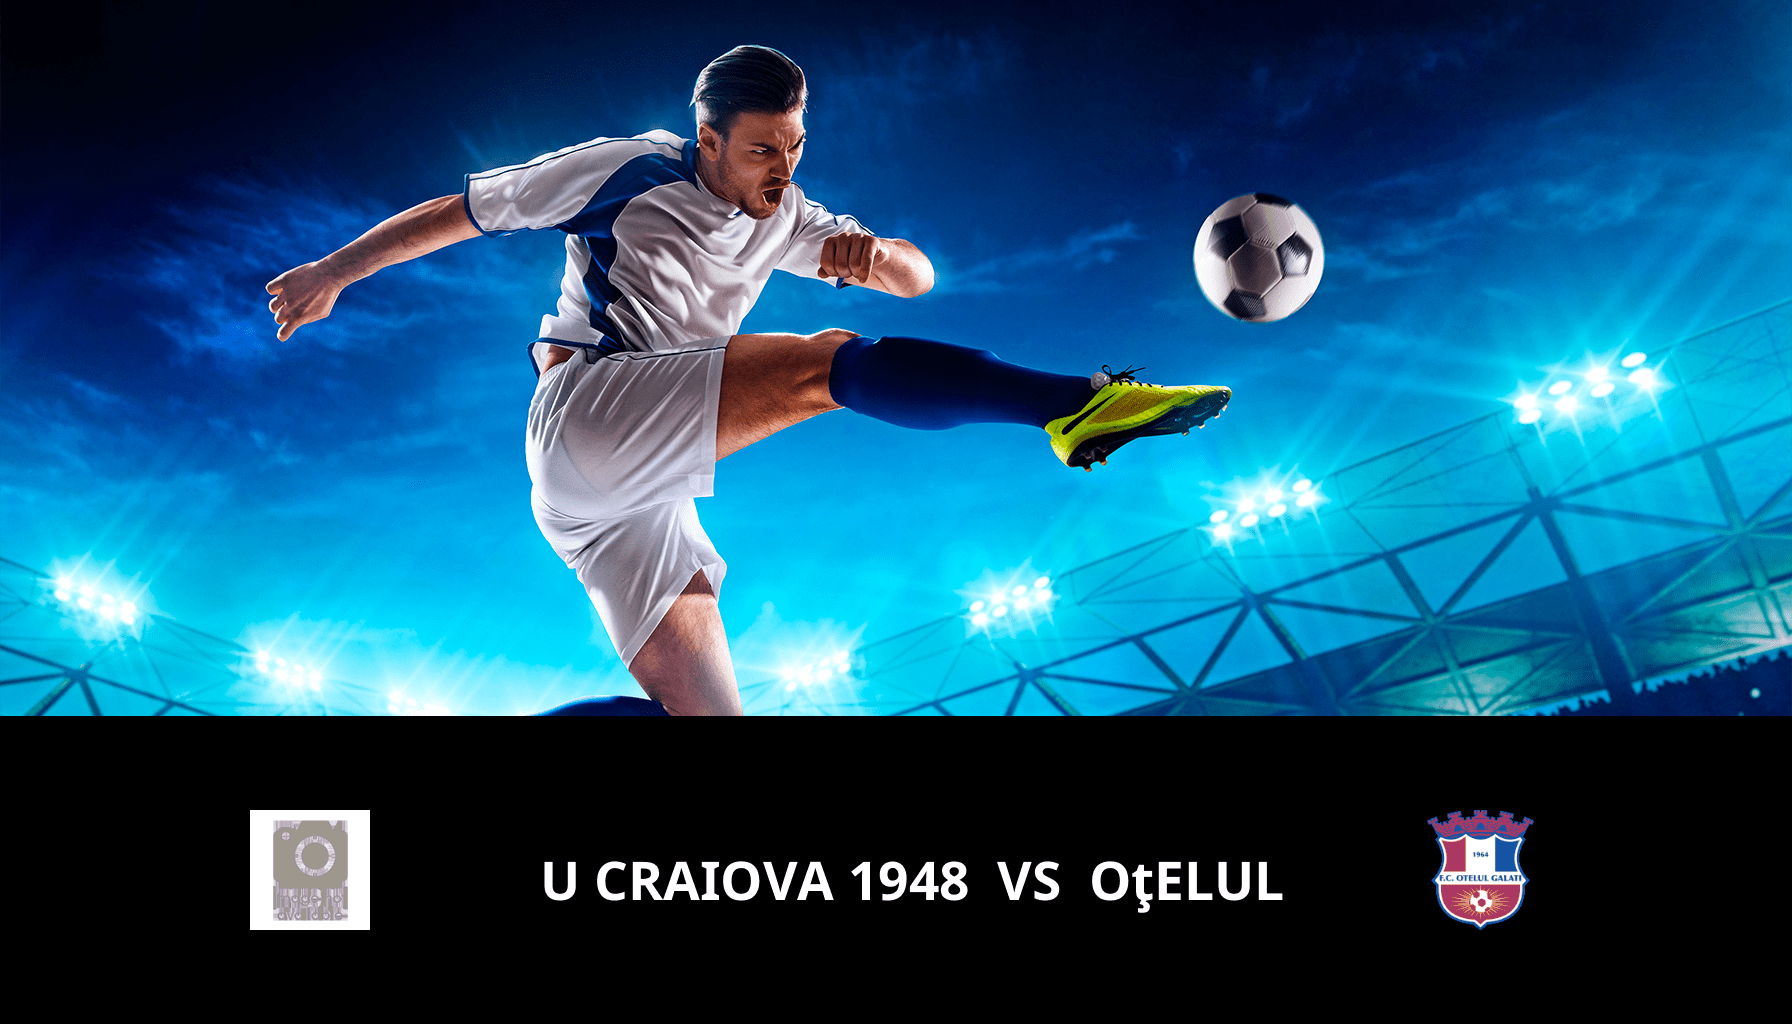 Previsione per U Craiova 1948 VS Oţelul il 31/03/2024 Analysis of the match